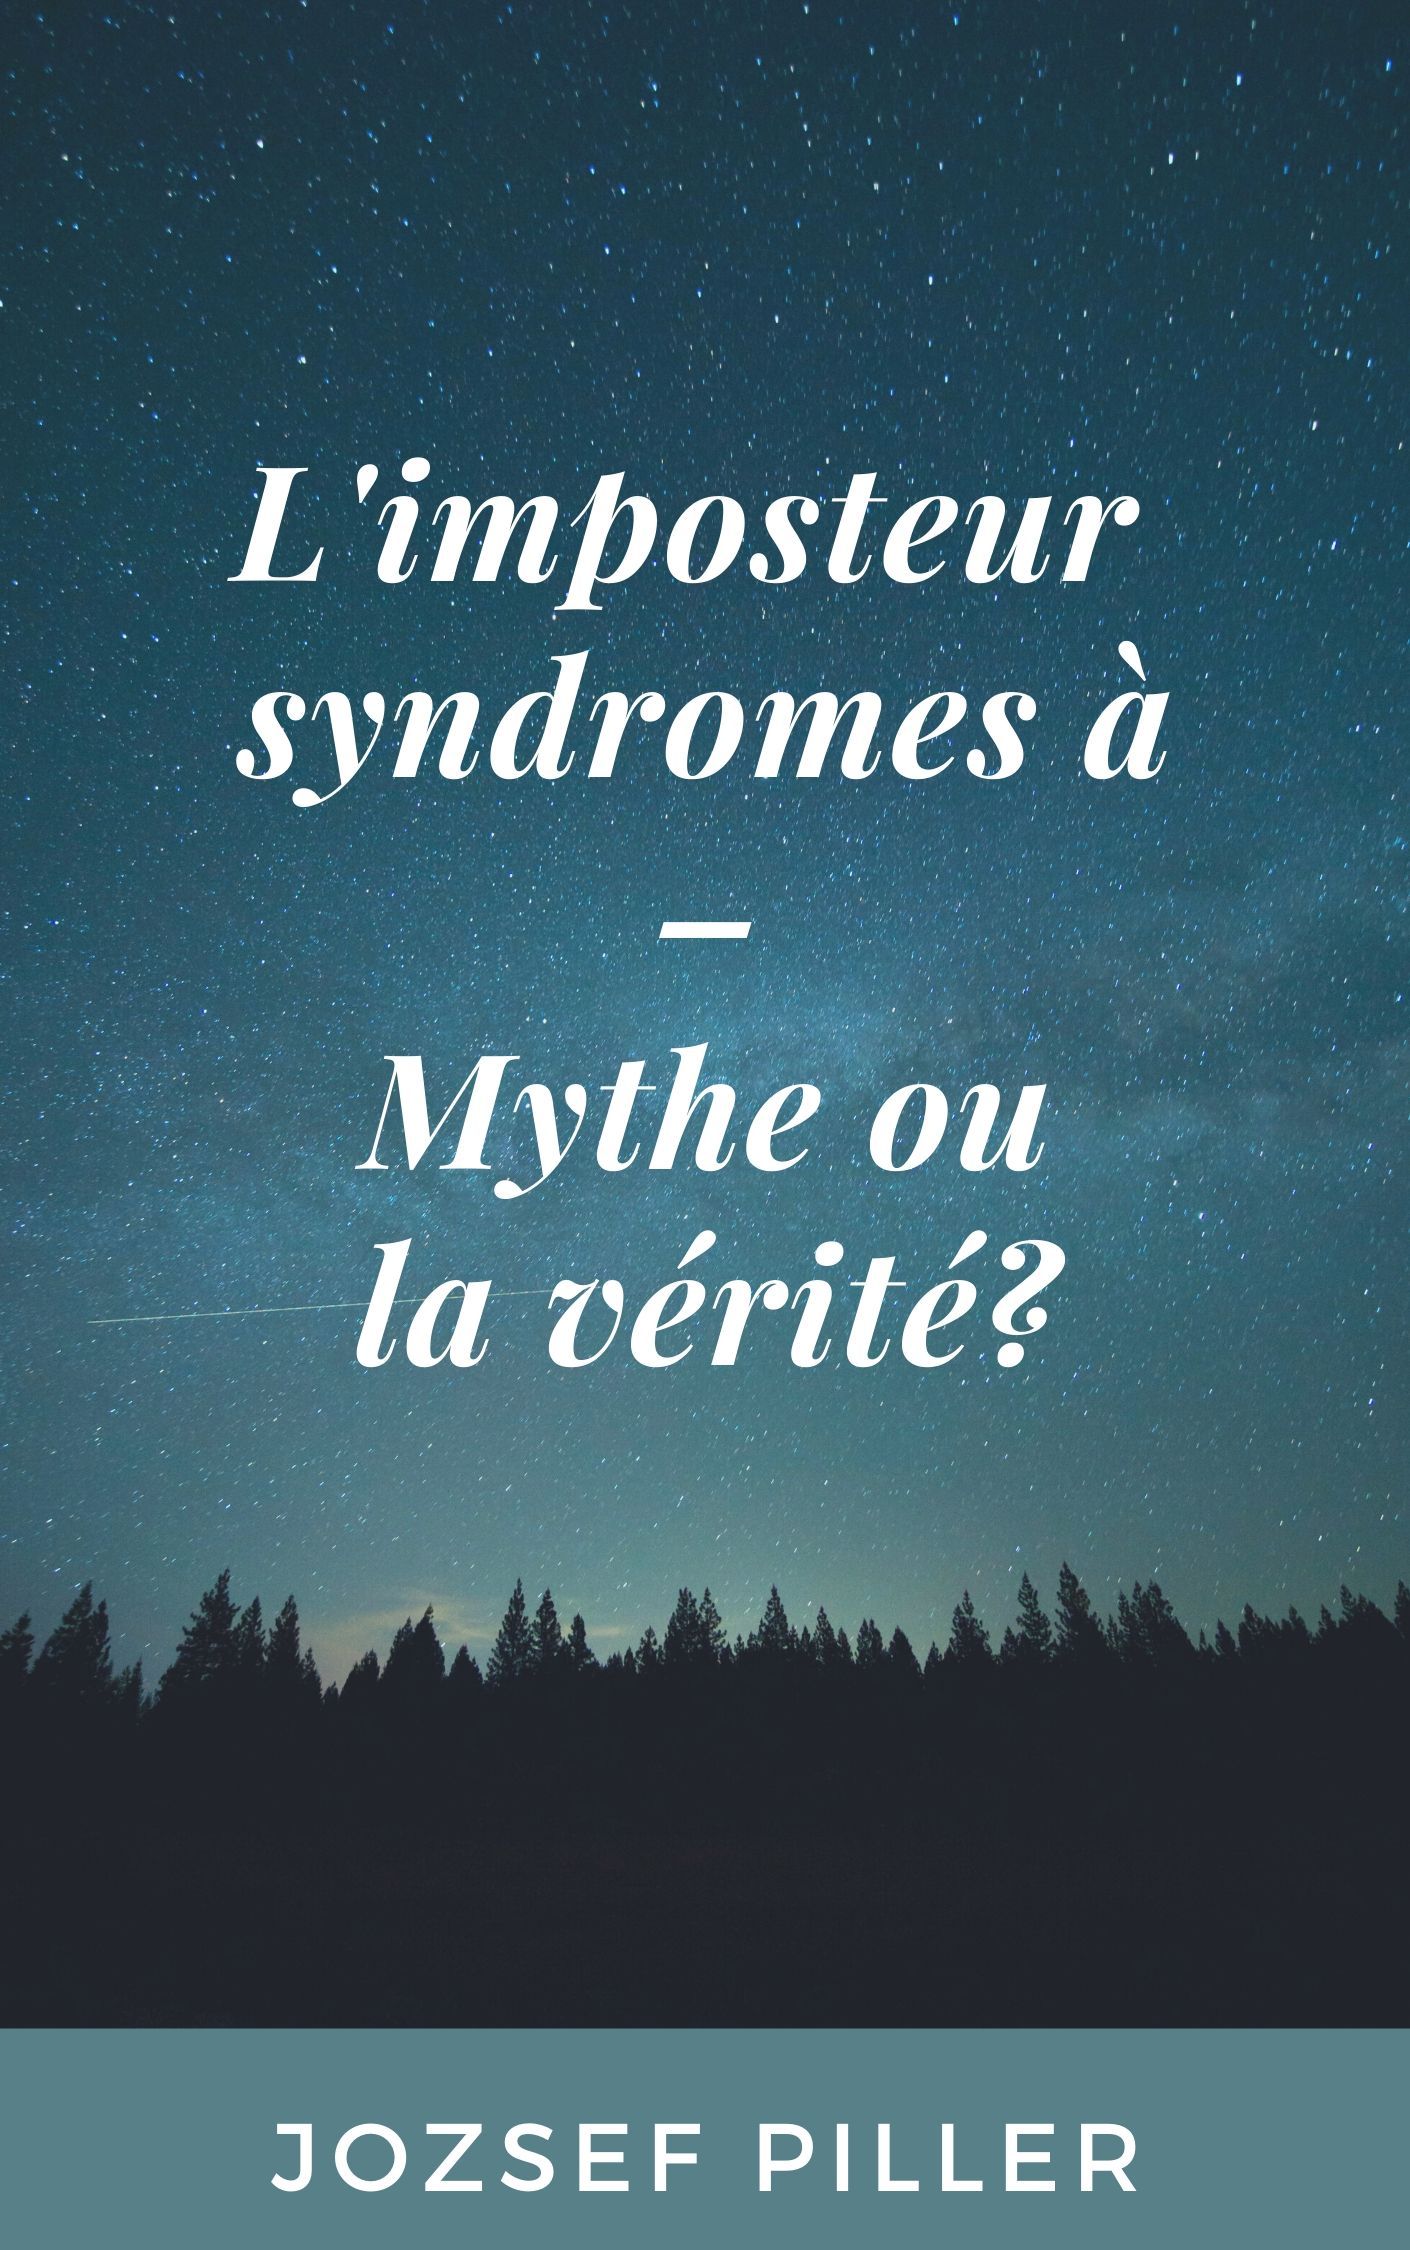 L'imposteur syndromes à - Mythe ou la vérité?, e-bok av Jozsef Piller